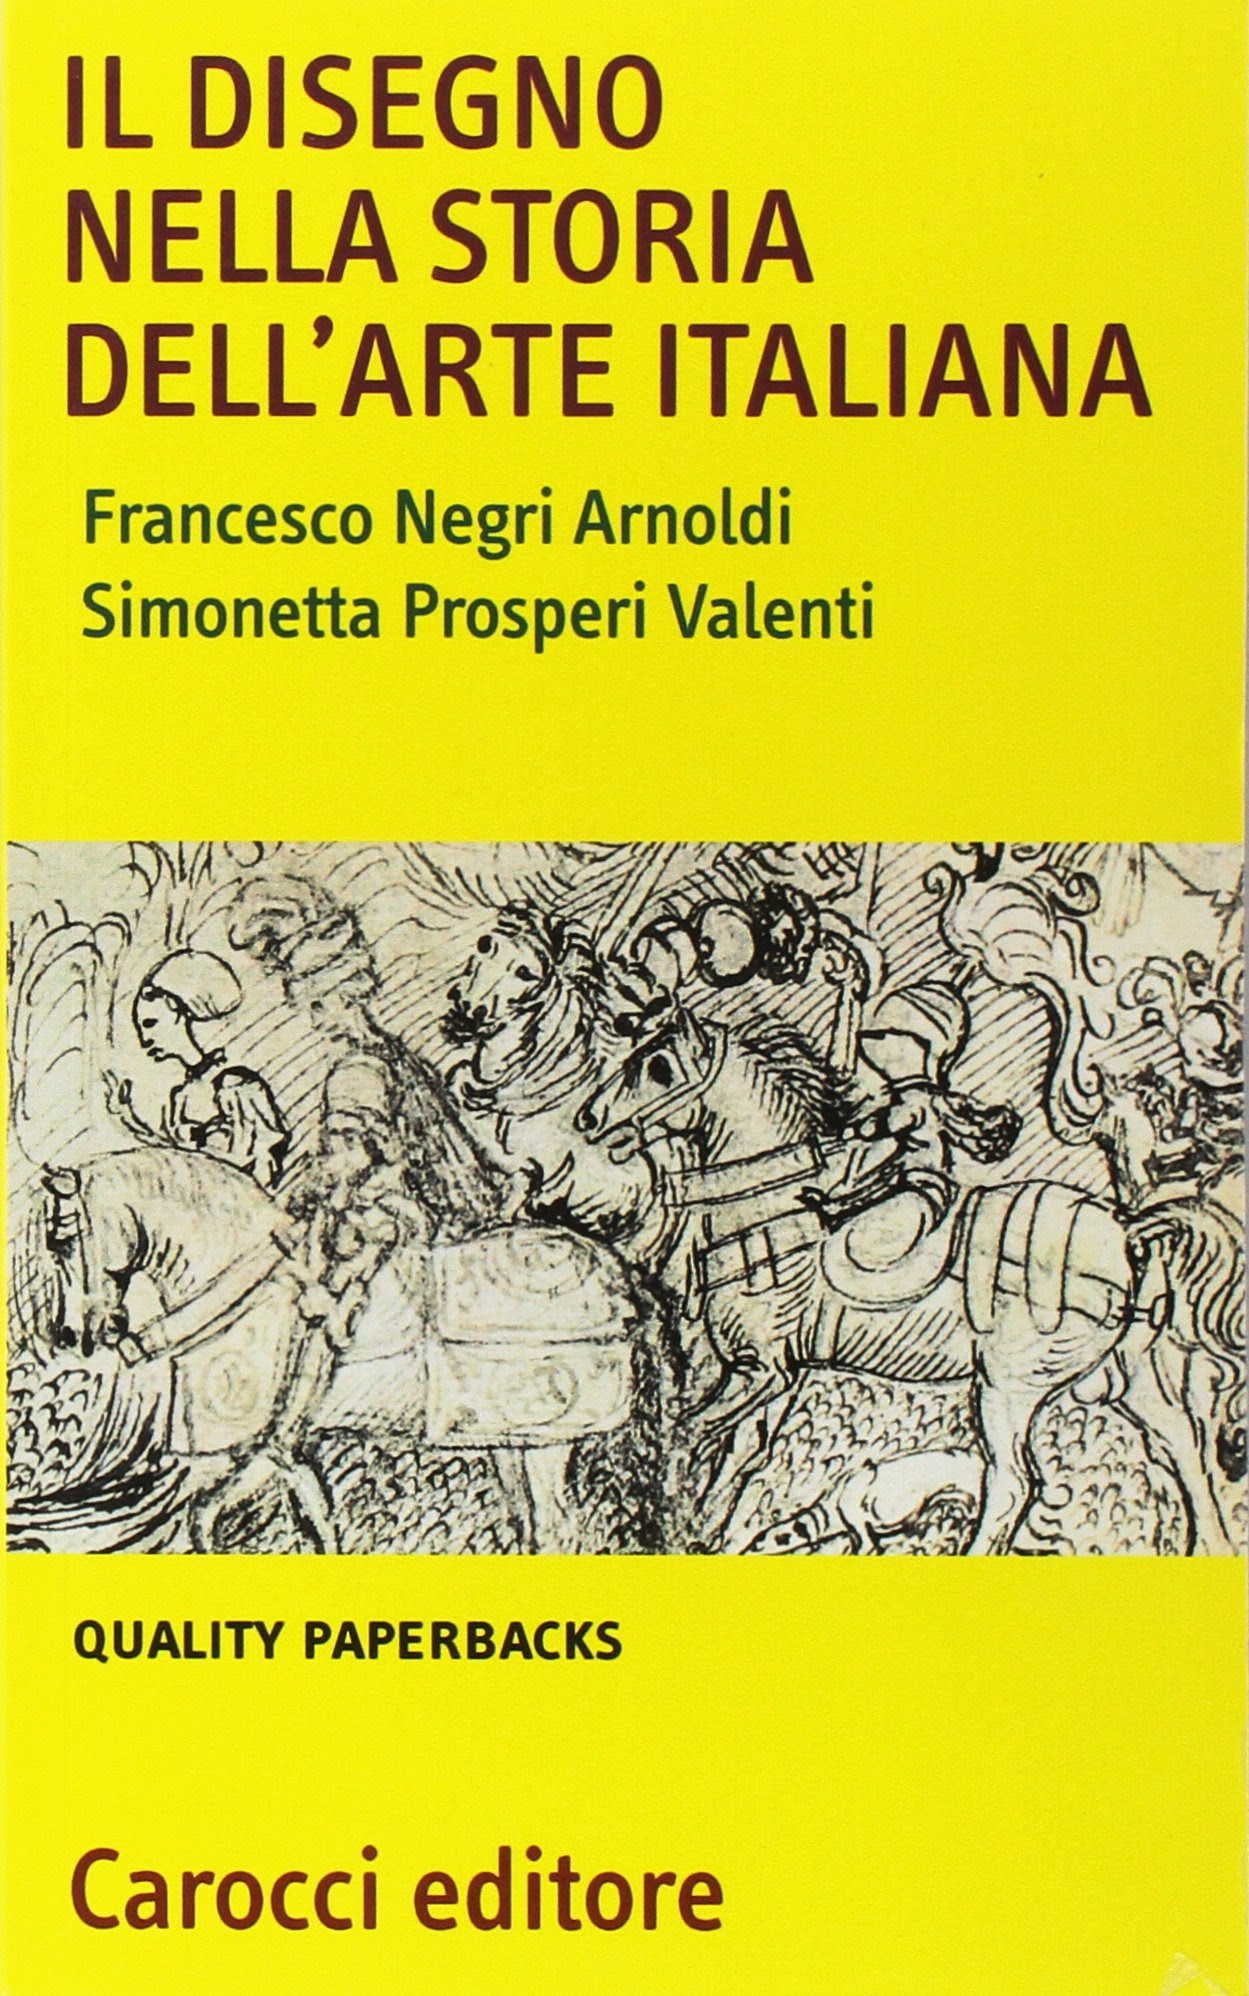 Il Disegno Nella Storia Dell'arte Italiana in Kindle/PDF/EPUB